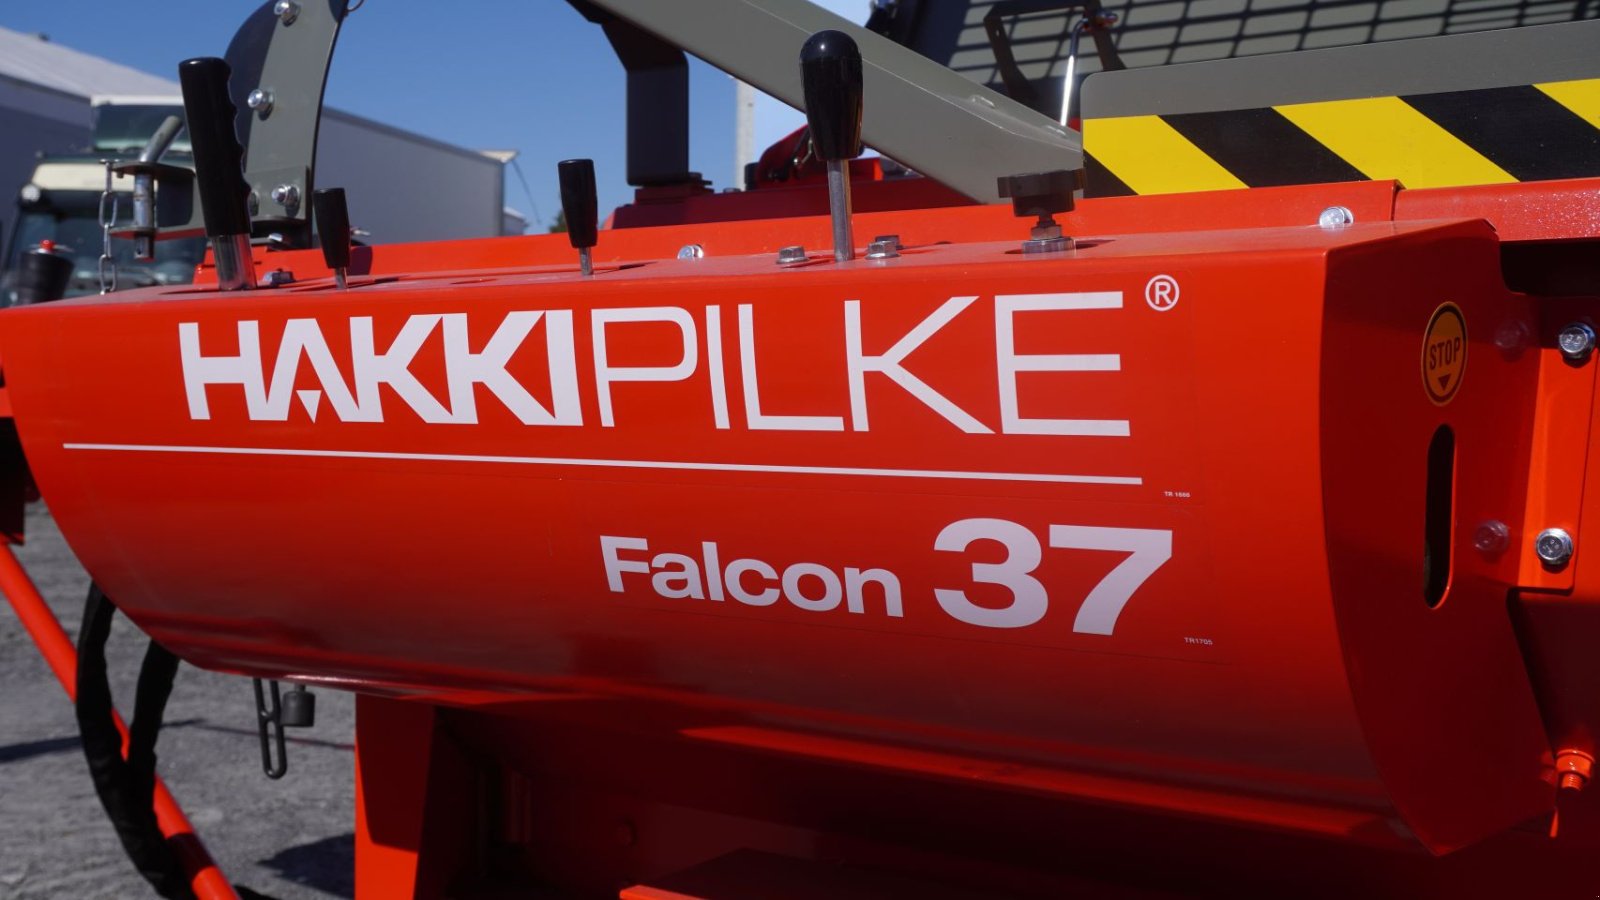 Holzspalter des Typs Hakki Pilke FALCON 37, Gebrauchtmaschine in Grou (Bild 2)